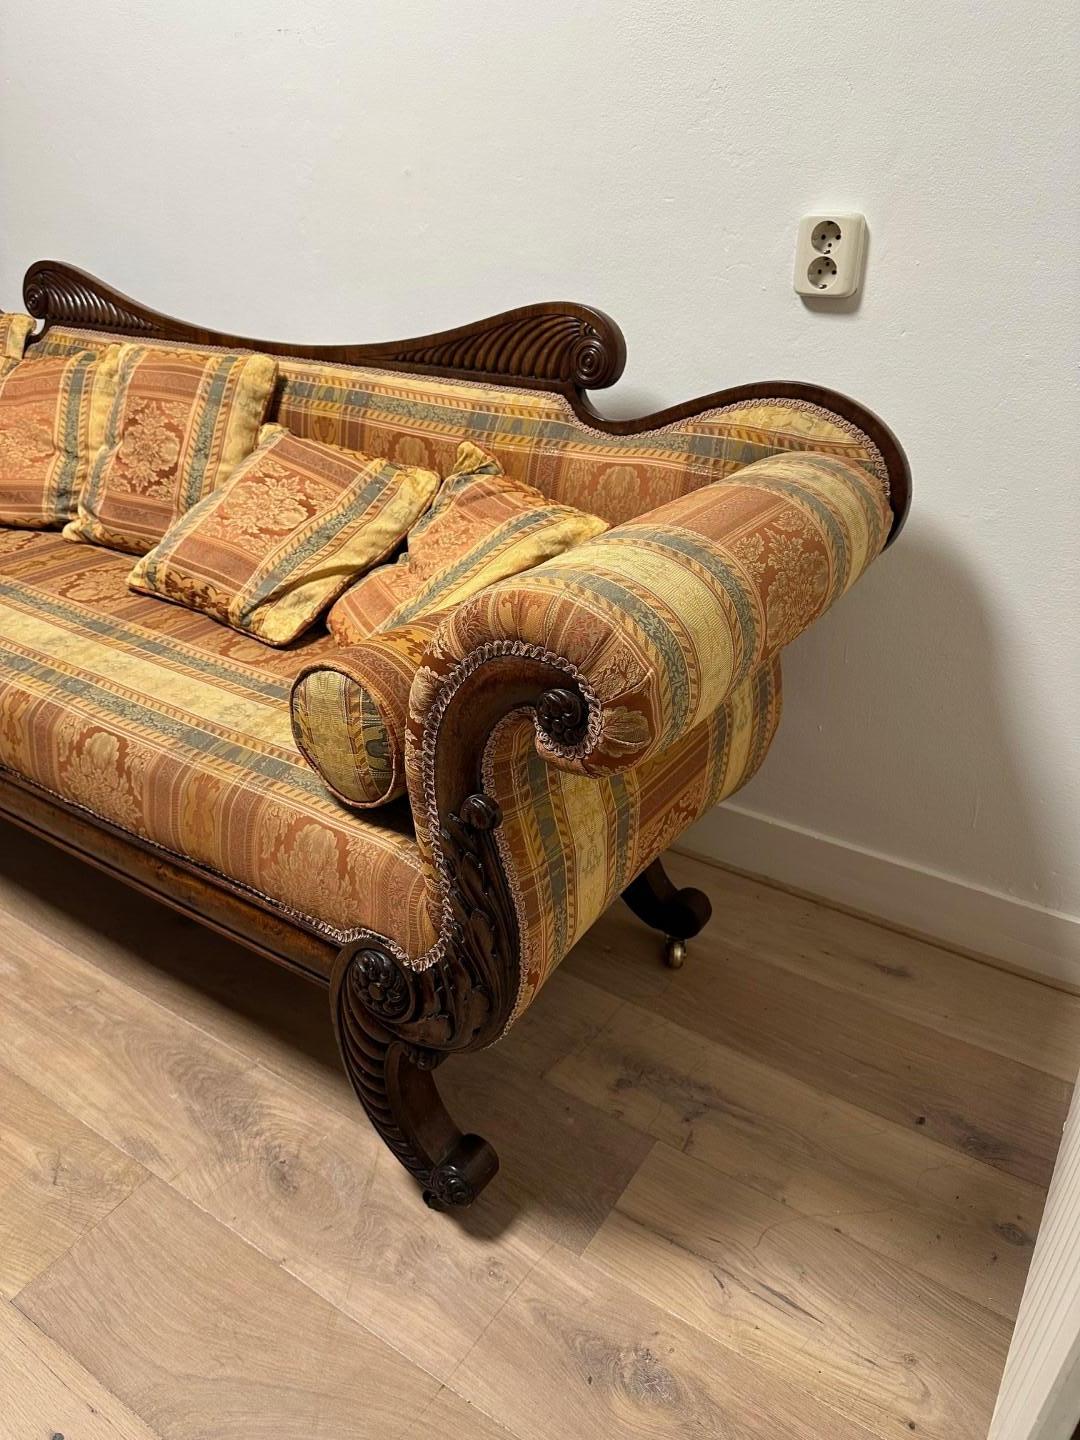 Impressionnant canapé 3 places en acajou d'époque régence. Un canapé Regency en acajou du début du XIXe siècle est un meuble élégant typique de la période Regency au Royaume-Uni (environ 1811-1820).

Le style Regency se caractérise par une